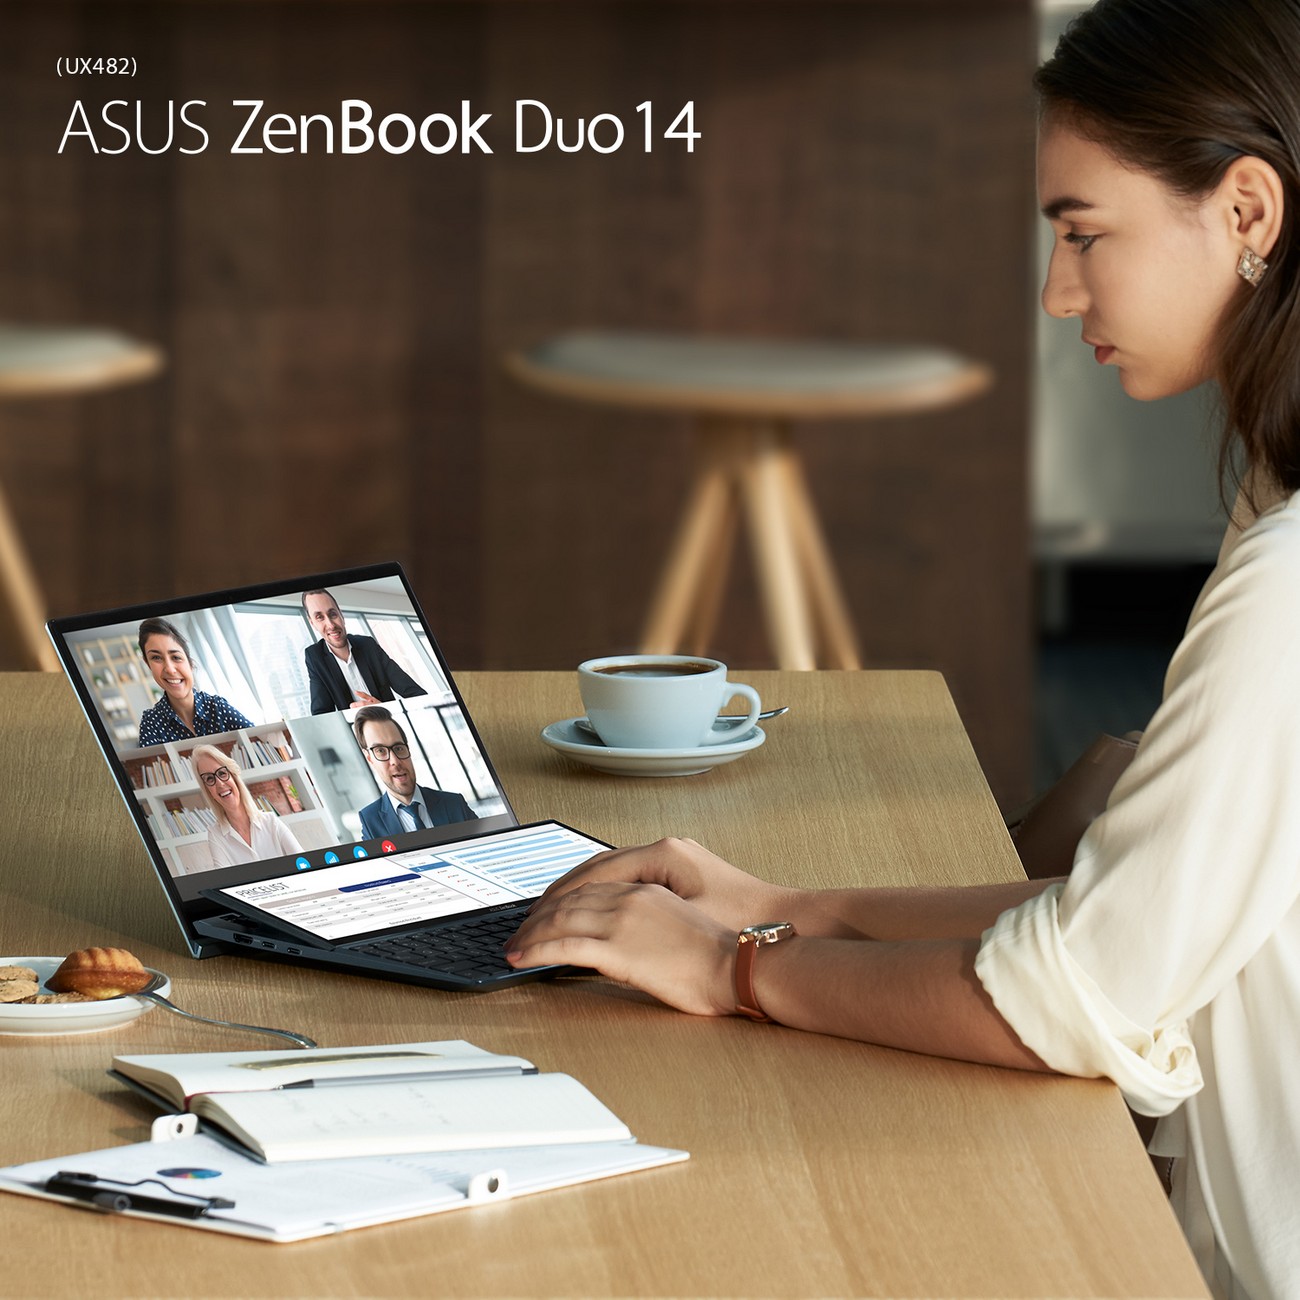 ASUS ZenBook Duo 14 UX482: Laptop đa nhiệm 2 màn hình mỏng nhẹ nhất thế giới đã ra mắt